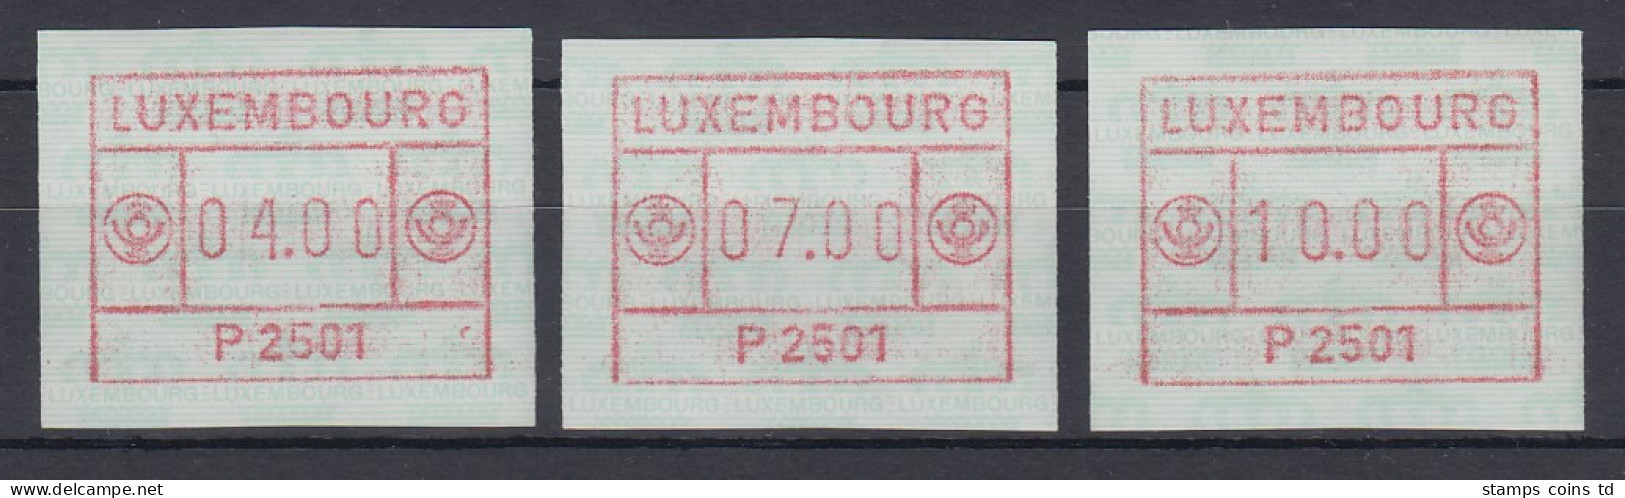 Luxemburg ATM P2501 Bräunlichrot Tastensatz 4-7-10 **   - Postage Labels